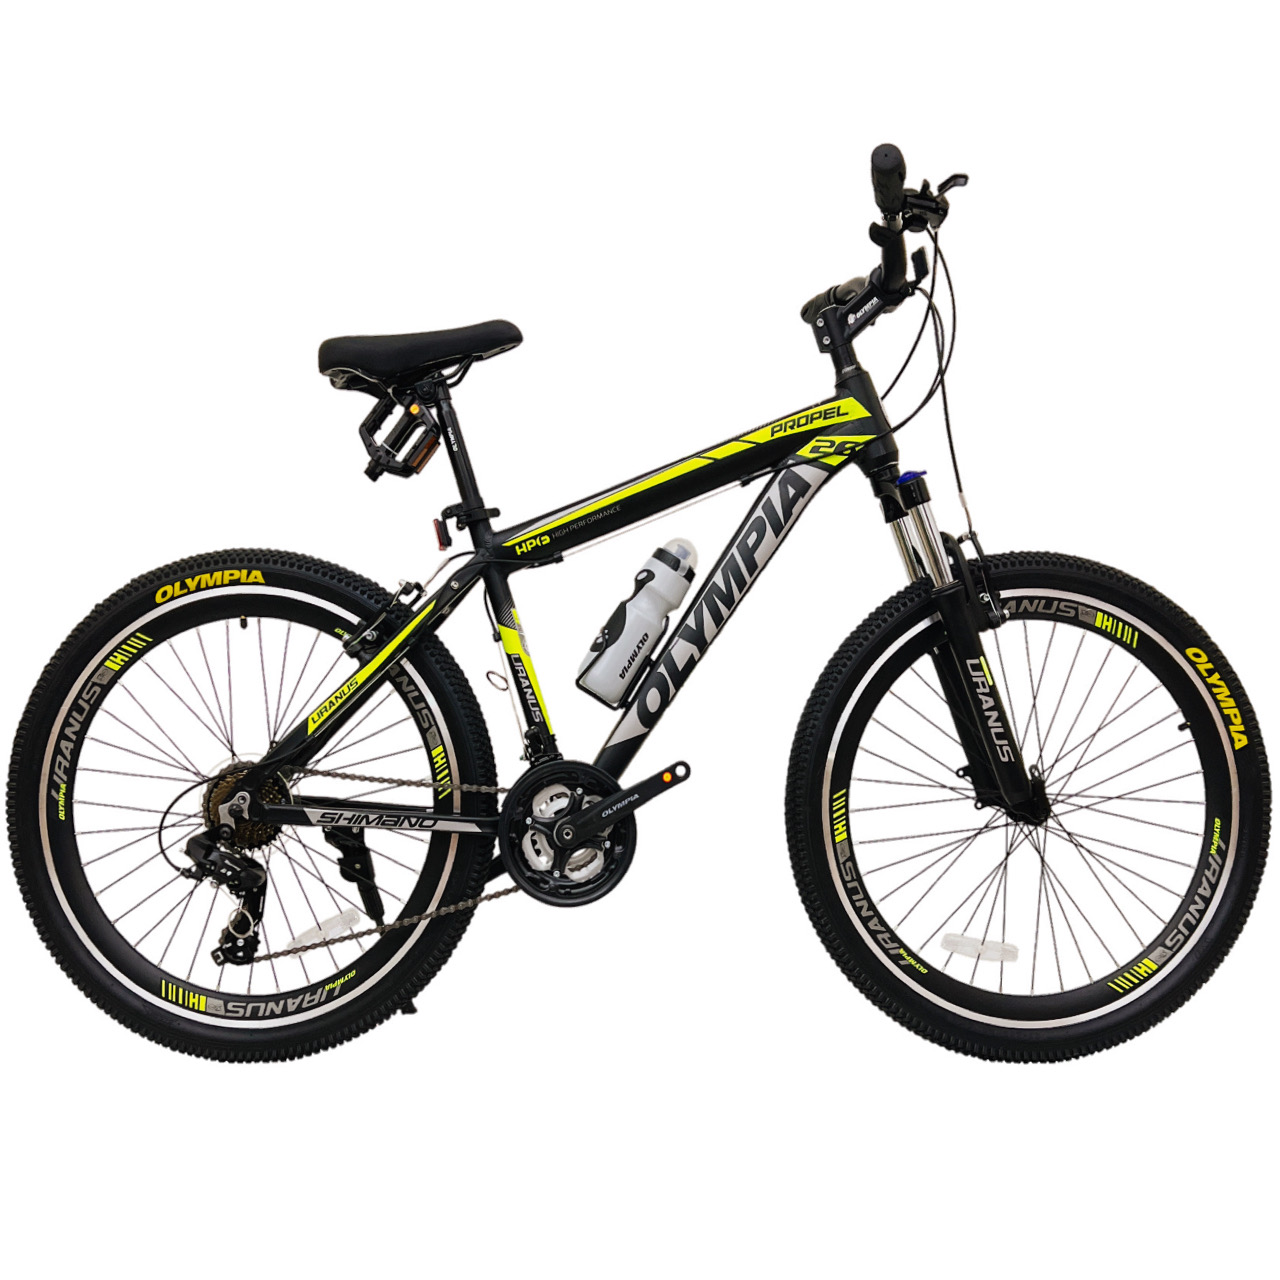 نکته خرید - قیمت روز دوچرخه کوهستان المپیا مدل PROPEL کد 2 سایز طوقه 26 خرید